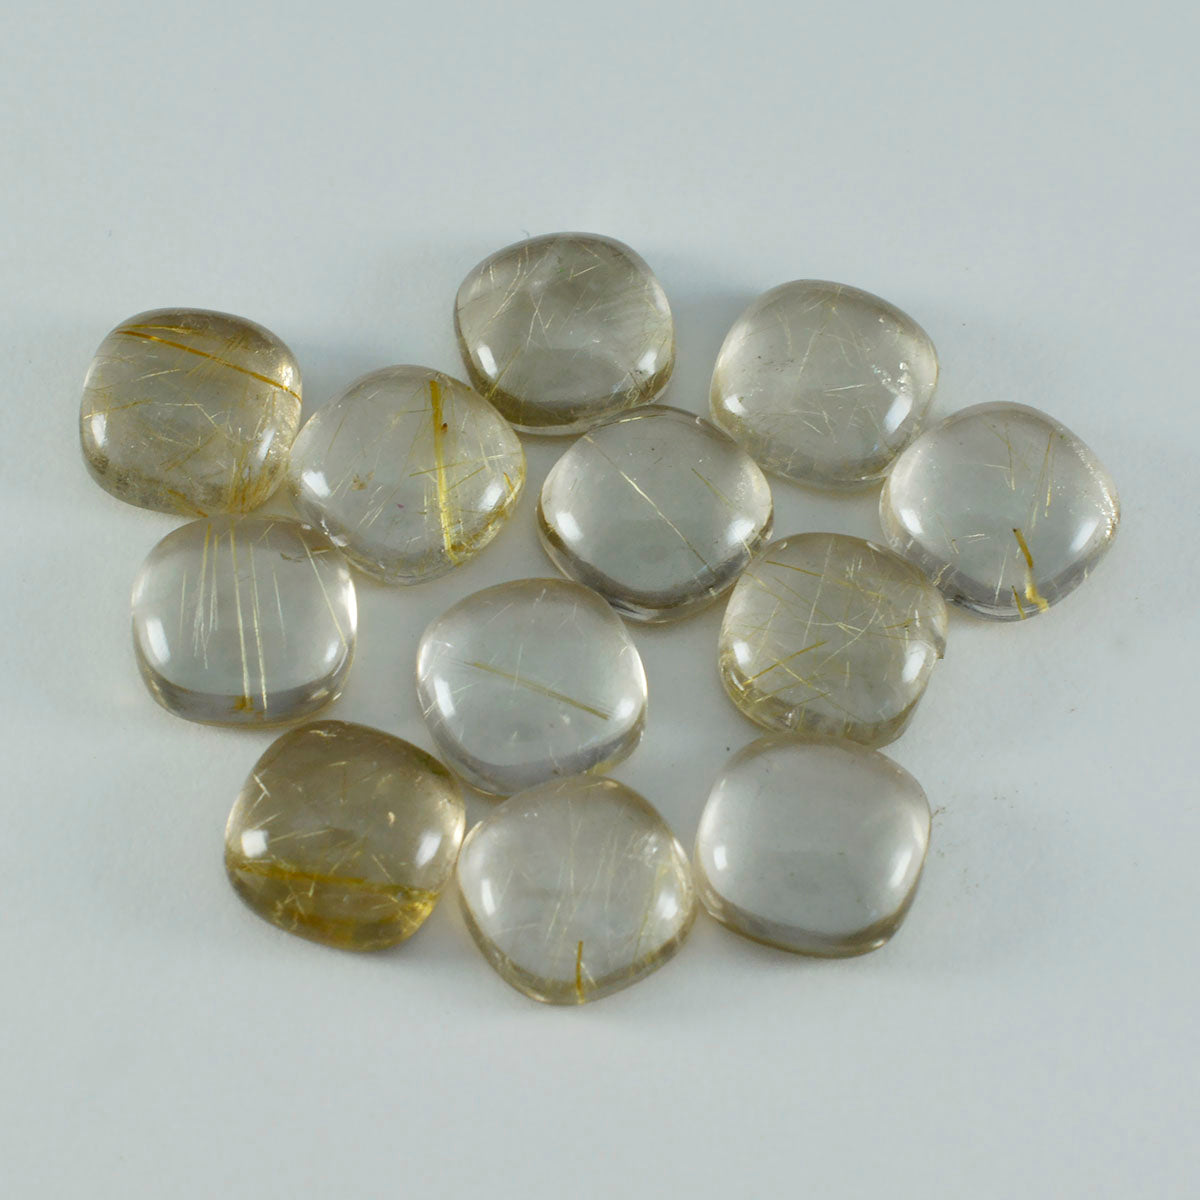 Riyogems – cabochon de quartz multi-rutile, 7x7mm, en forme de coussin, qualité attrayante, gemme en vrac, 1 pièce